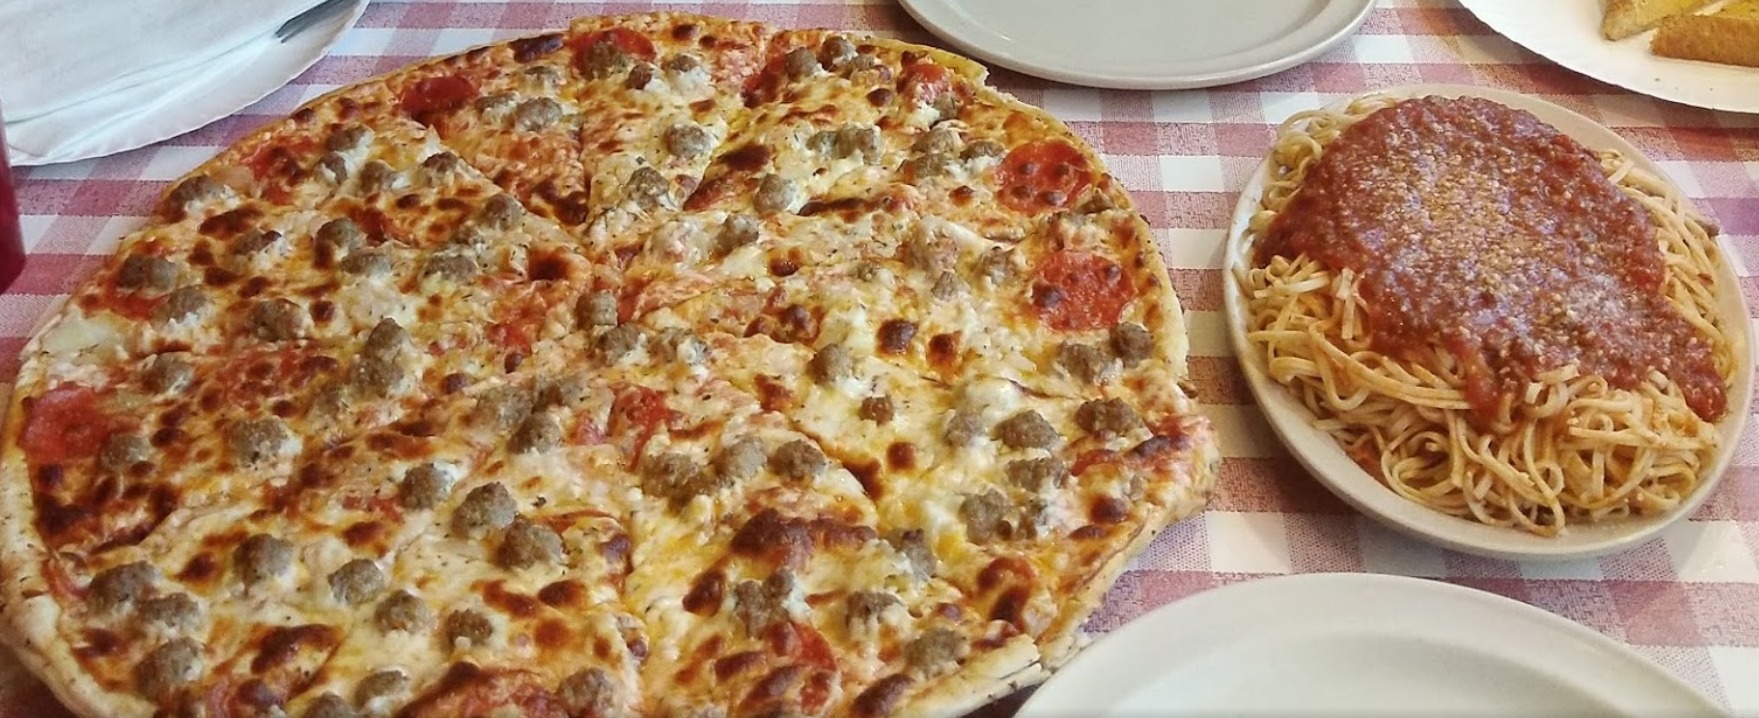 Guido's Pizza - Tontitown Photo